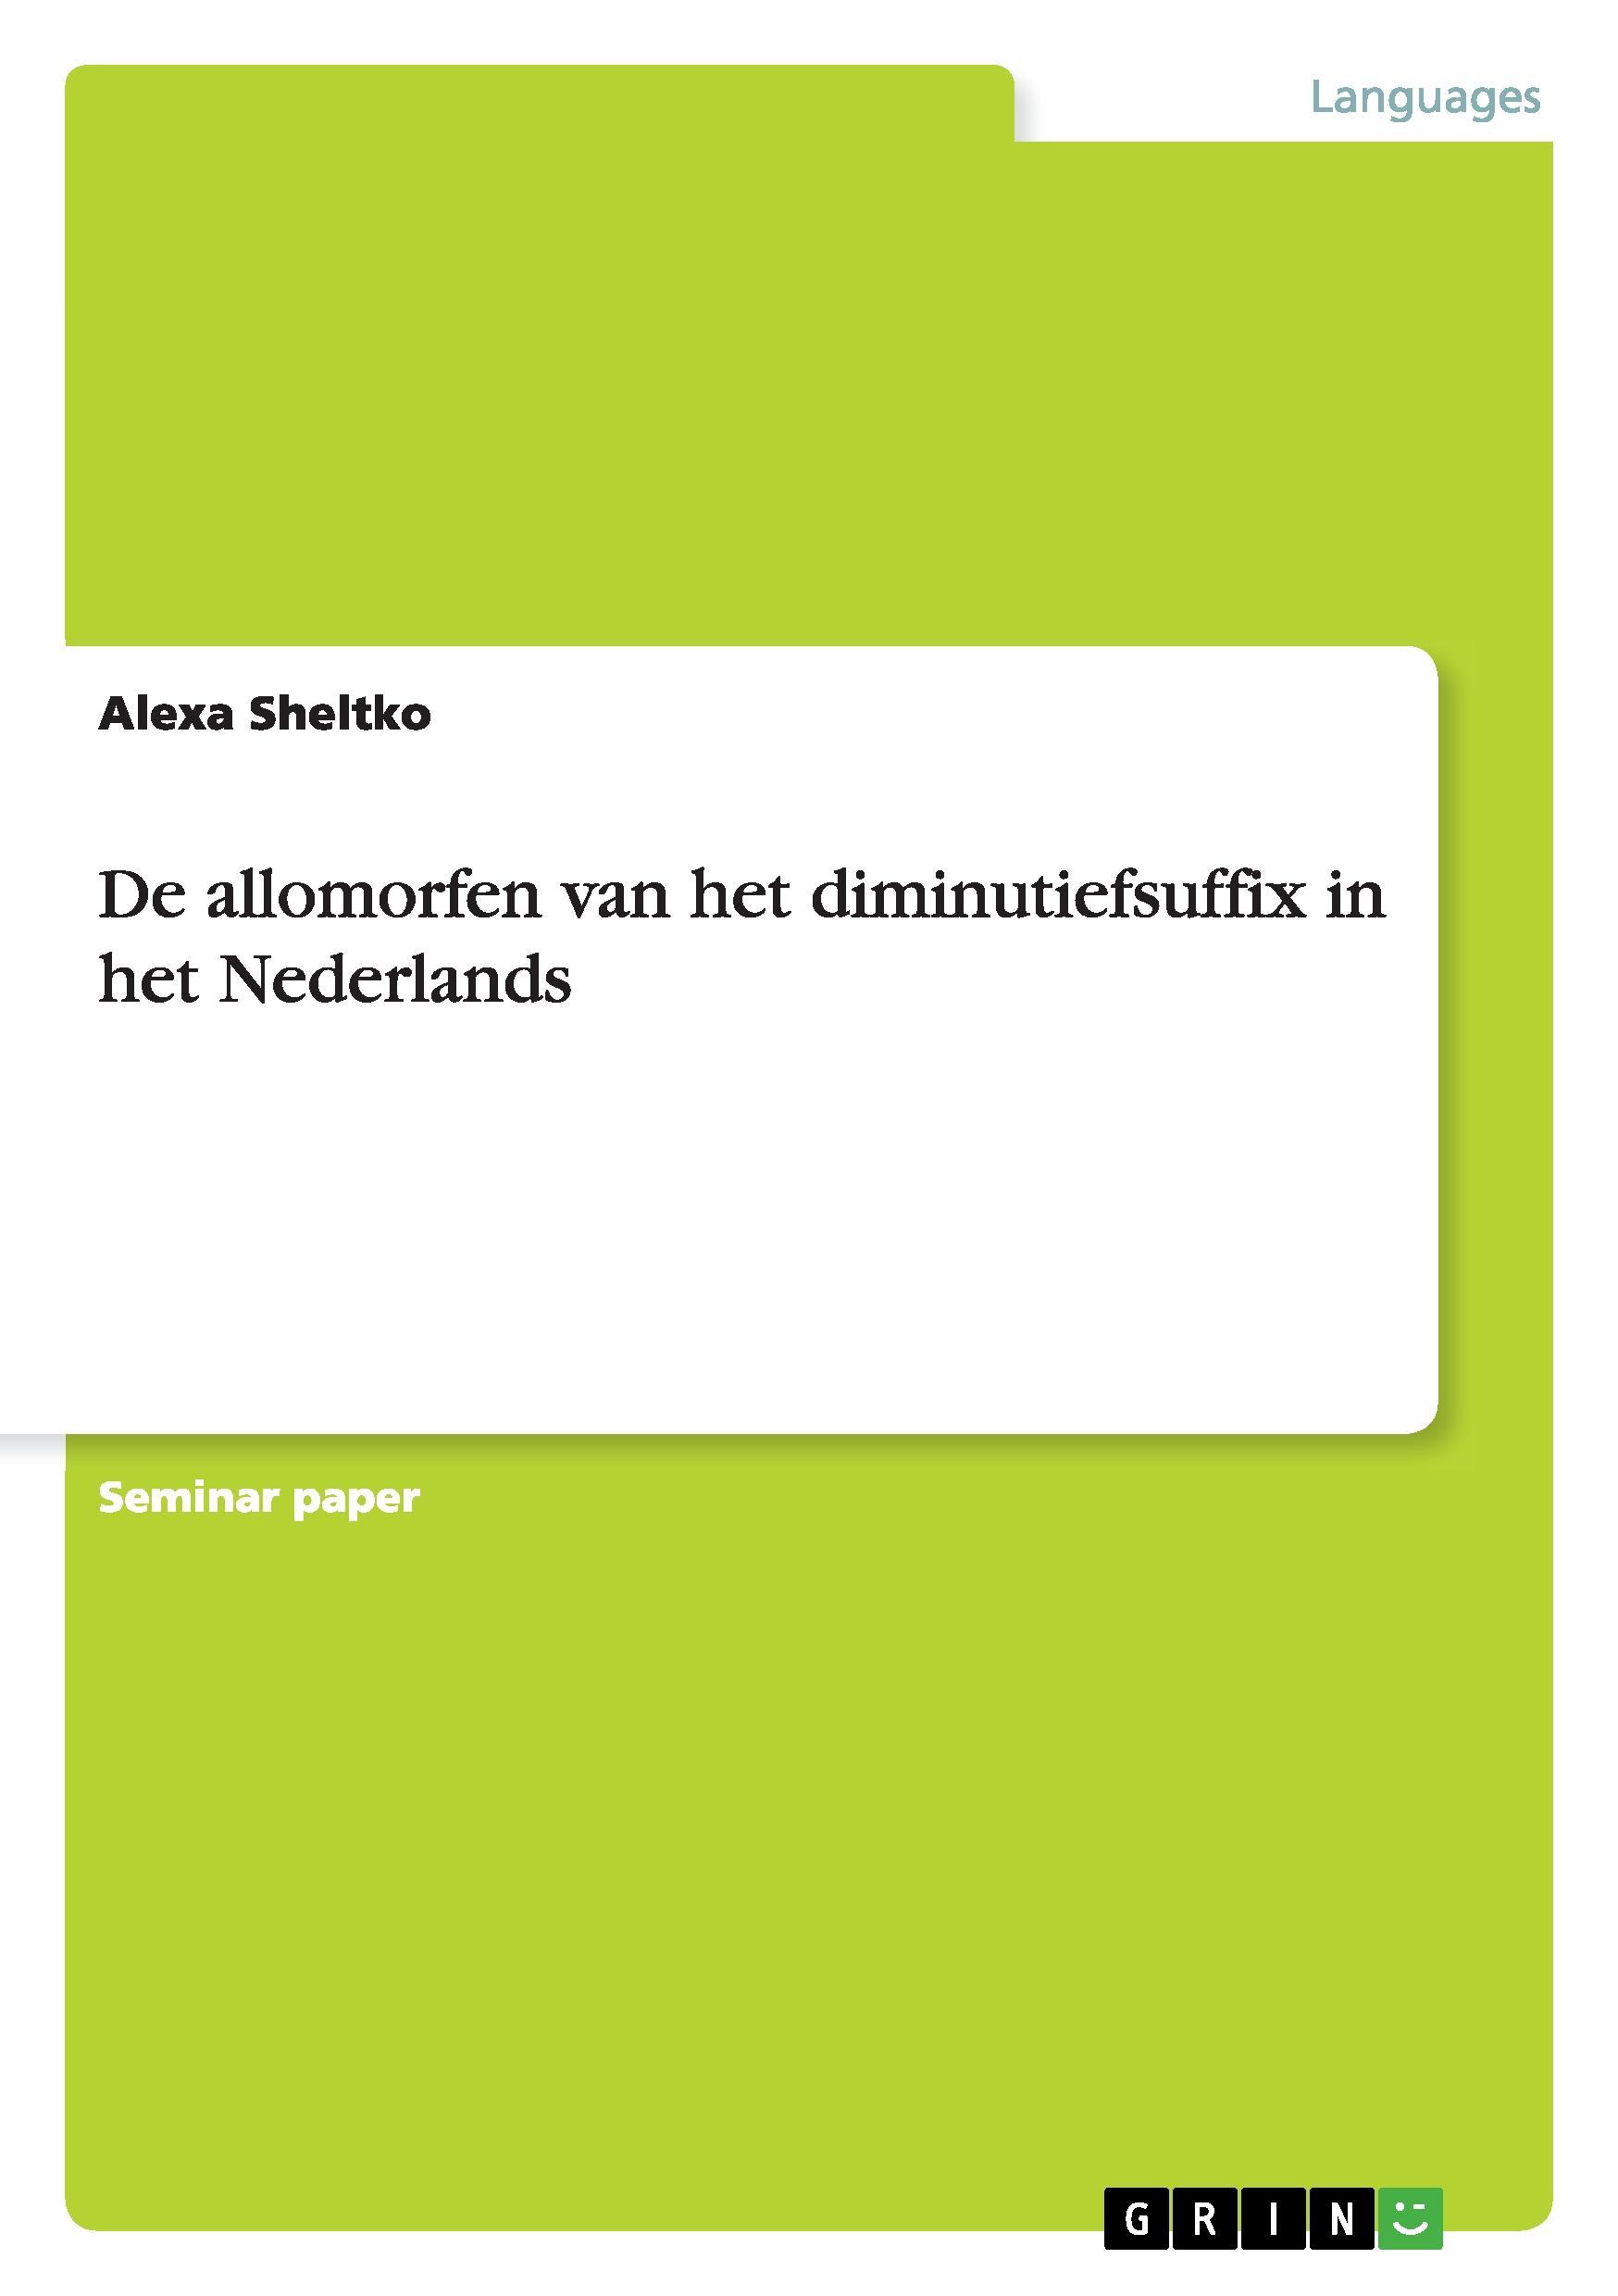 De allomorfen van het diminutiefsuffix in het Nederlands - Sheltko, Alexa